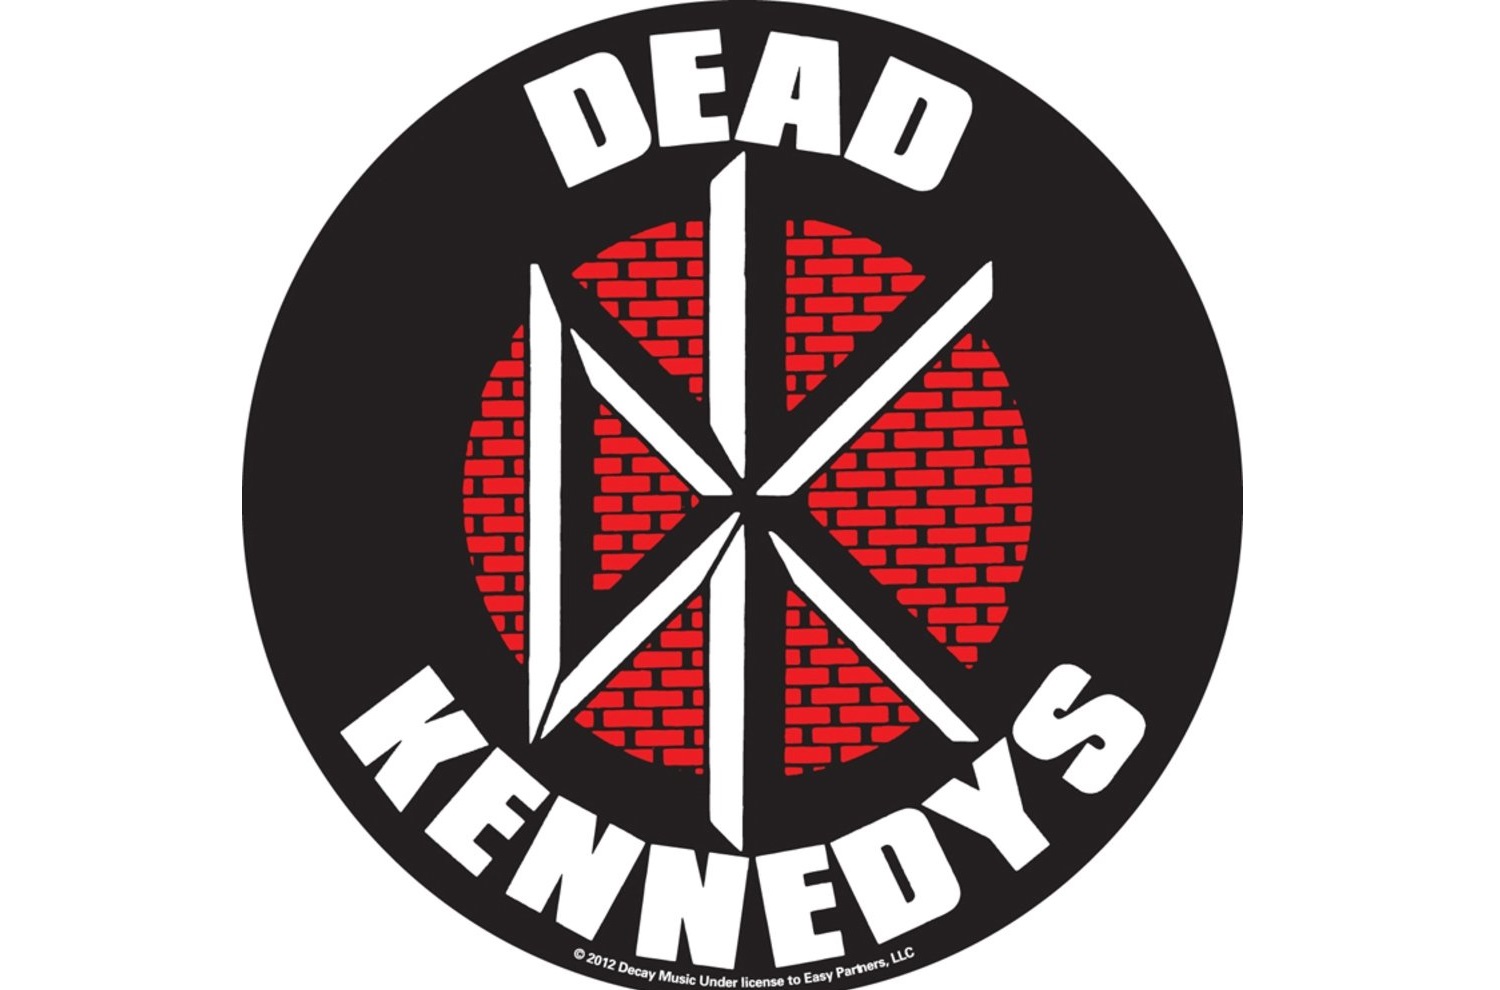 Dead Kennedy's